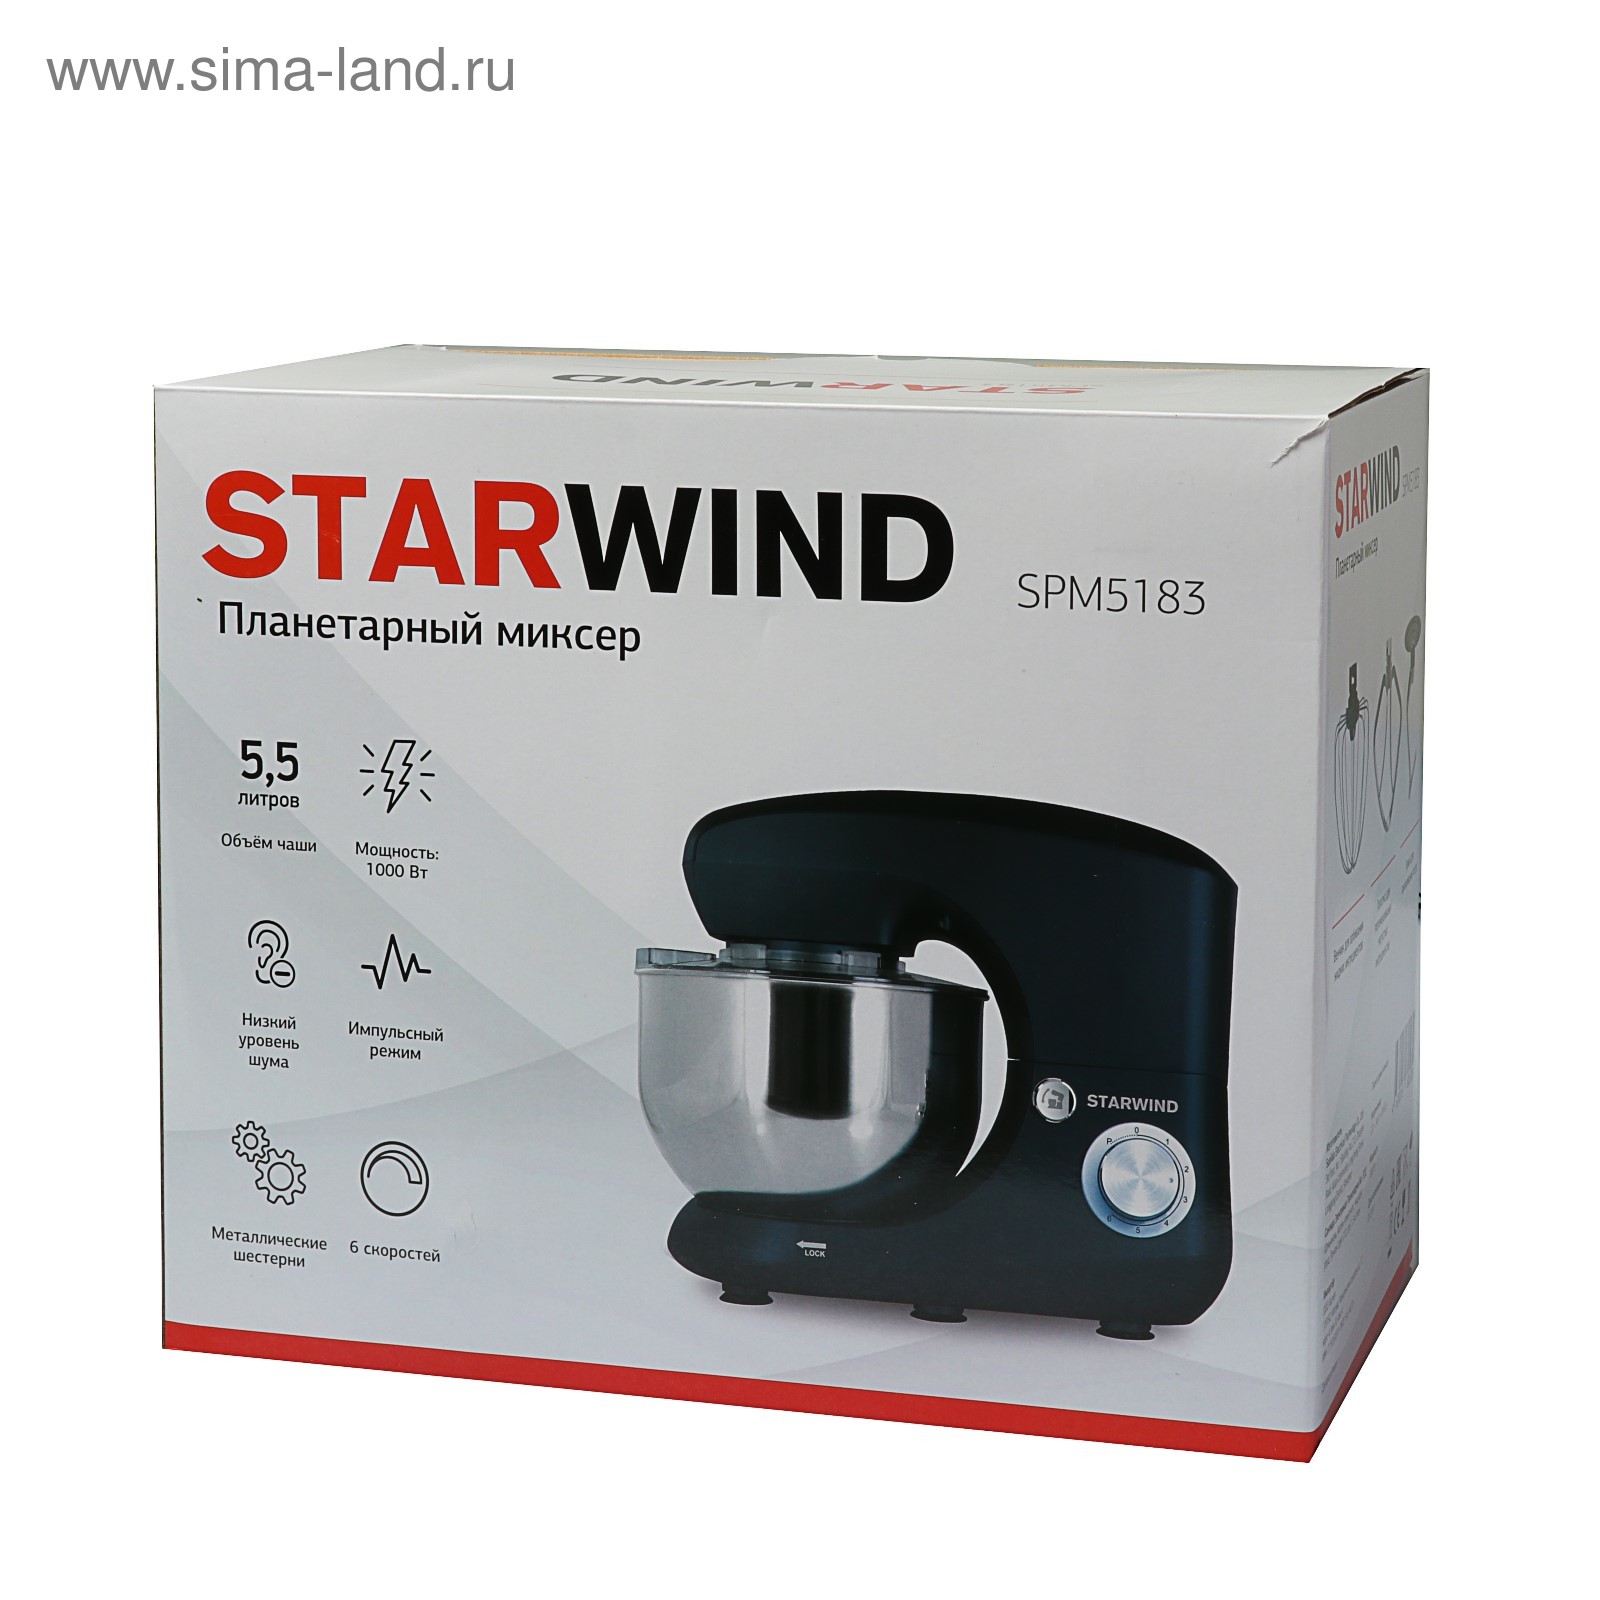 Планетарный миксер starwind spm5183. STARWIND spm5183. 5183 STARWIND миксер. Стационарный миксер STARWIND spm5183, 1000 Вт.